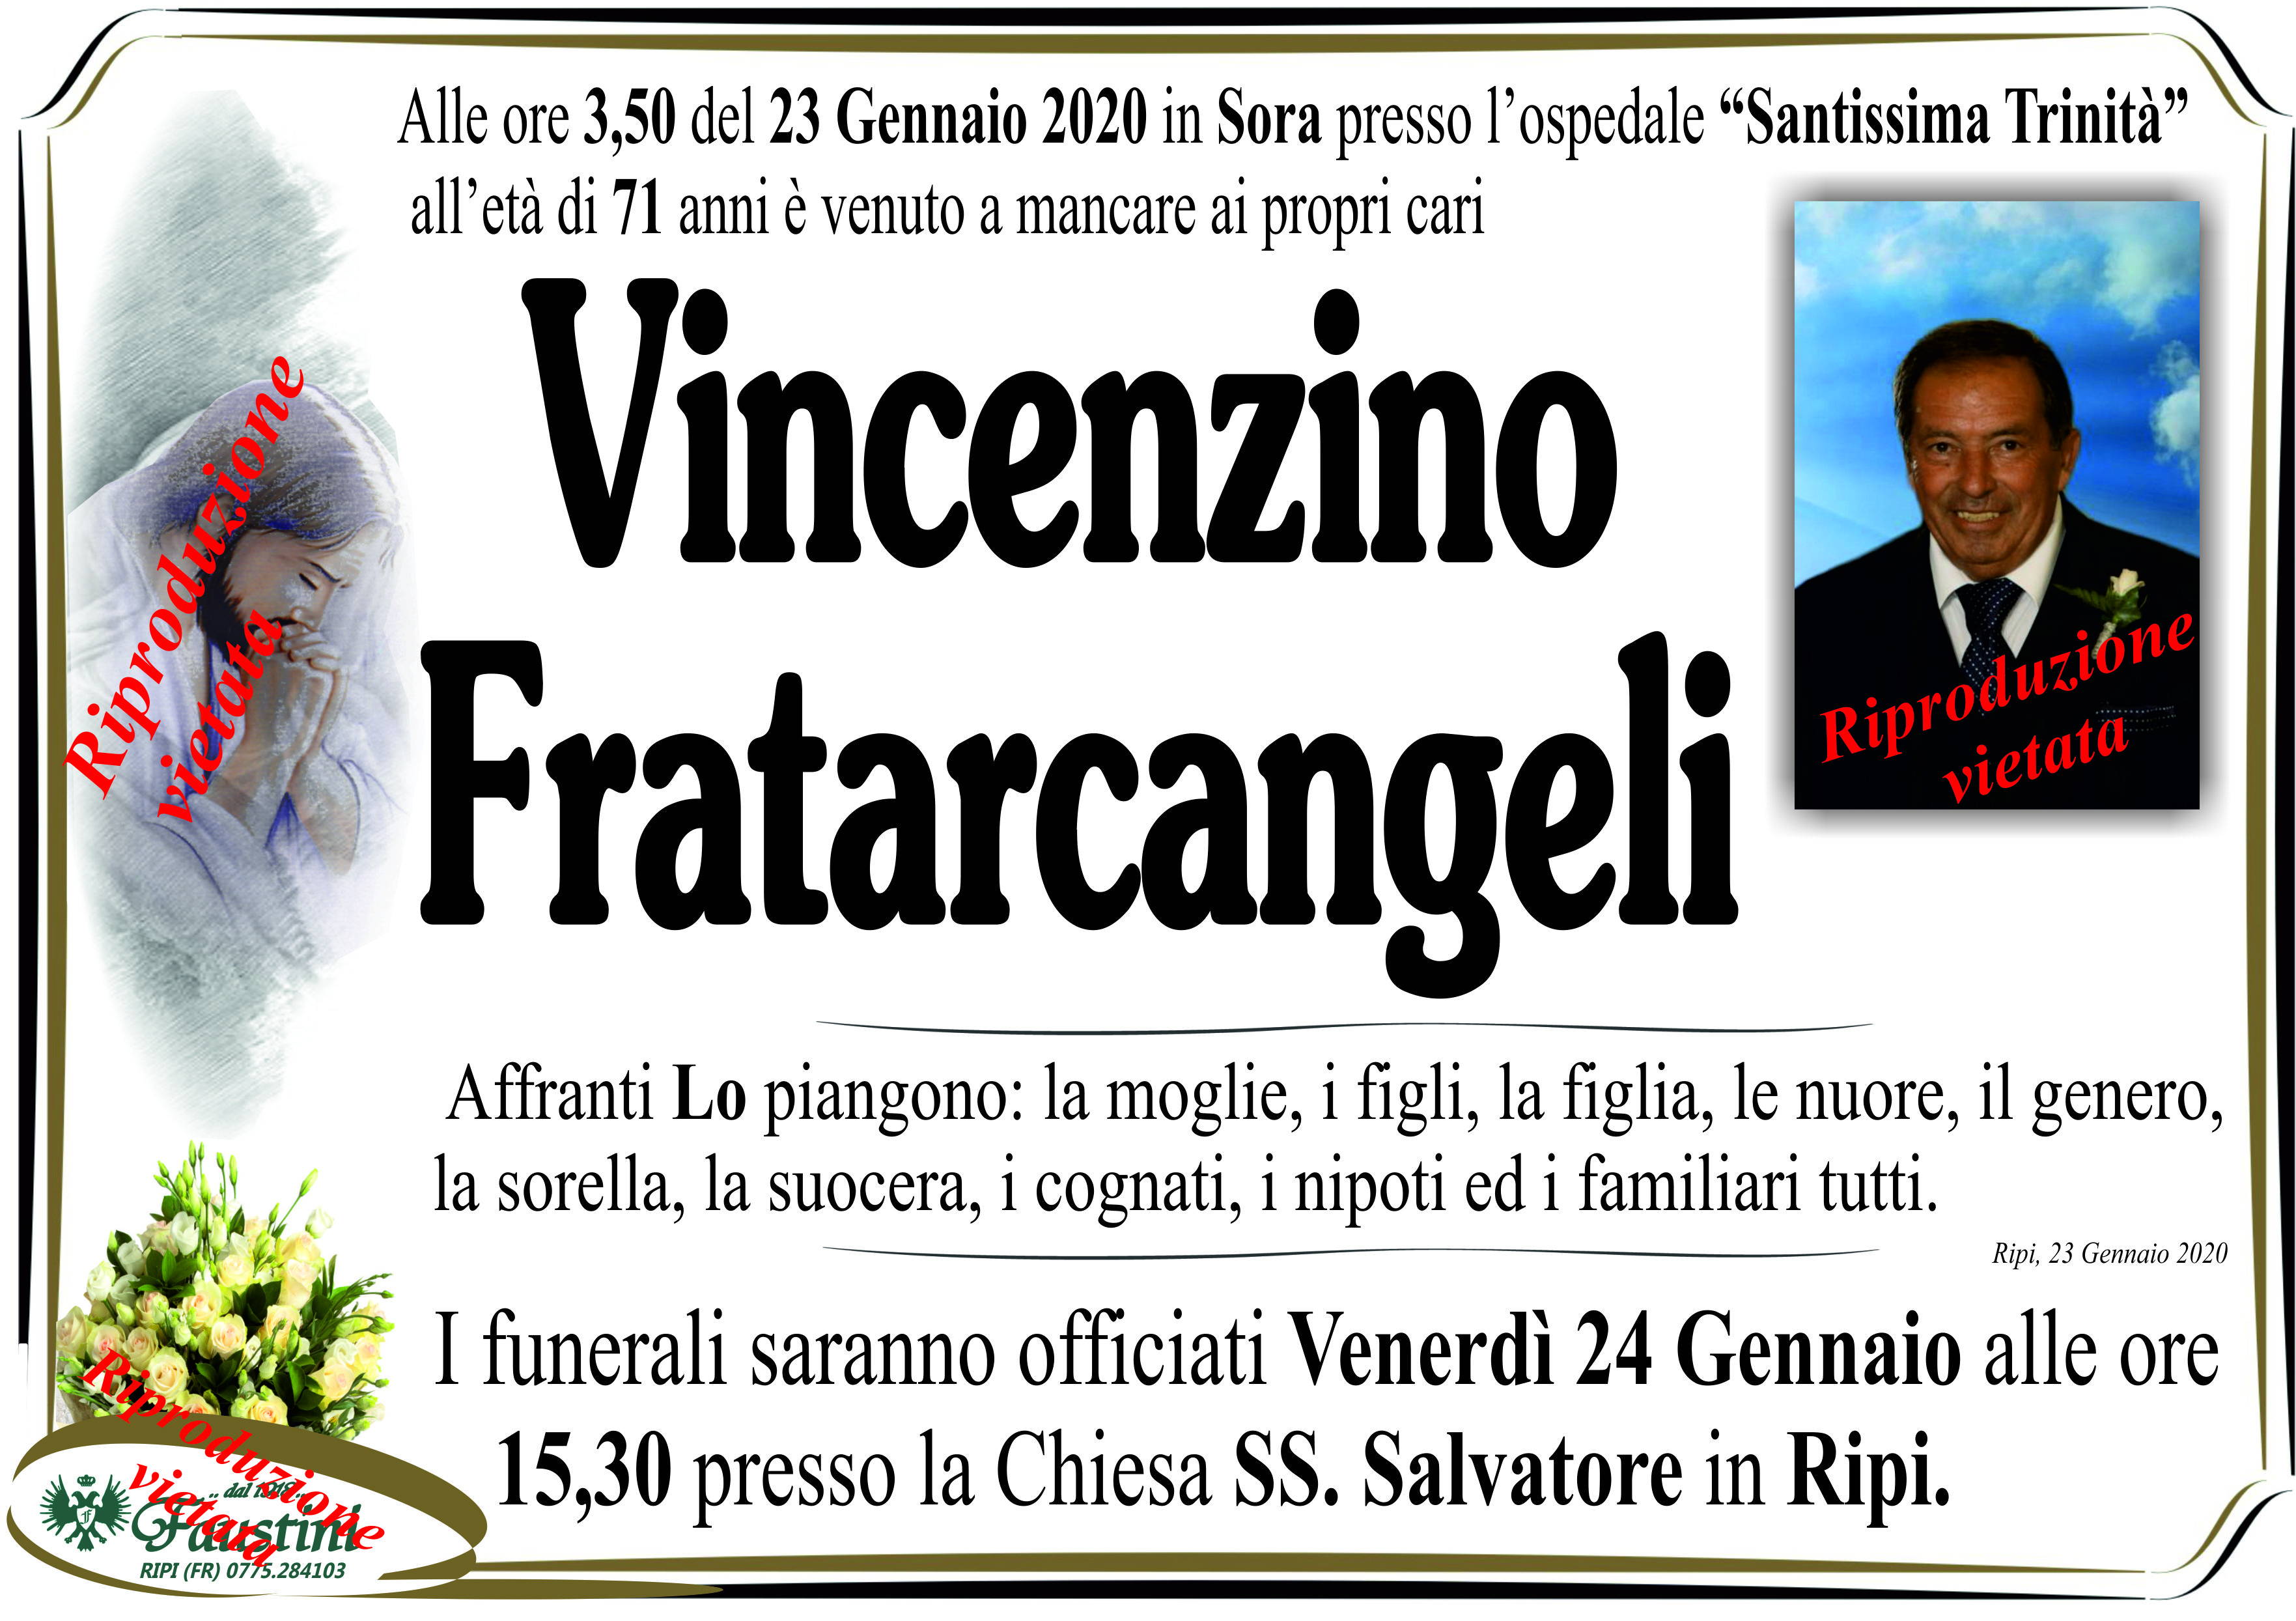 Vincenzino Fratarcangeli